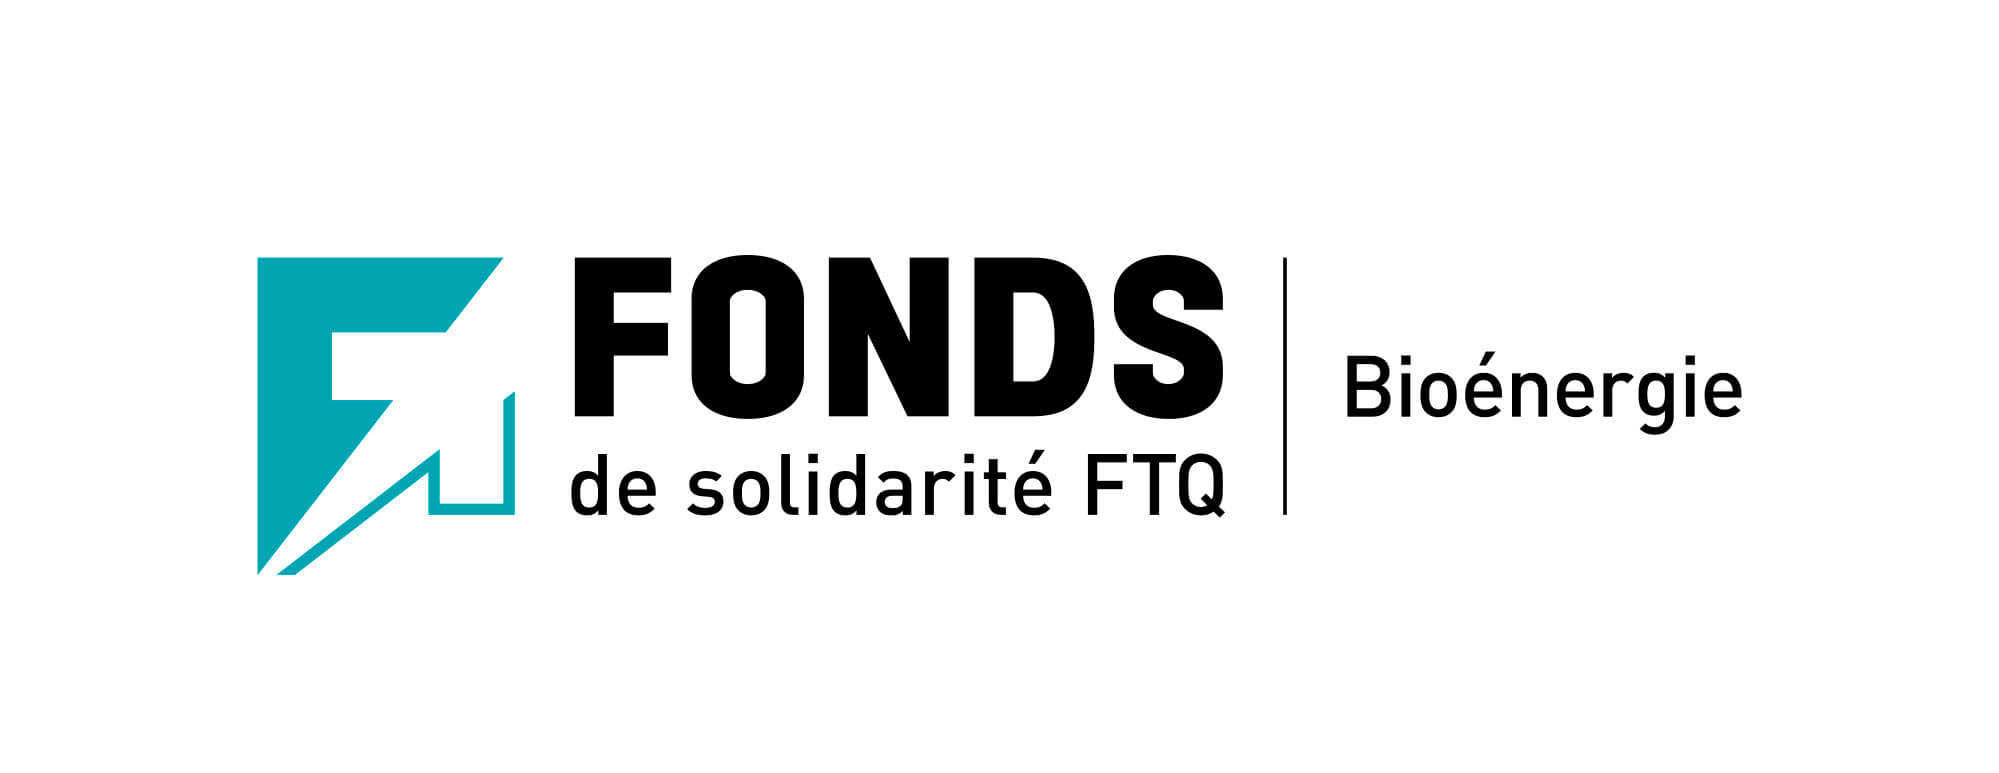 Fonds de solidarité FTQ - Bioénergie